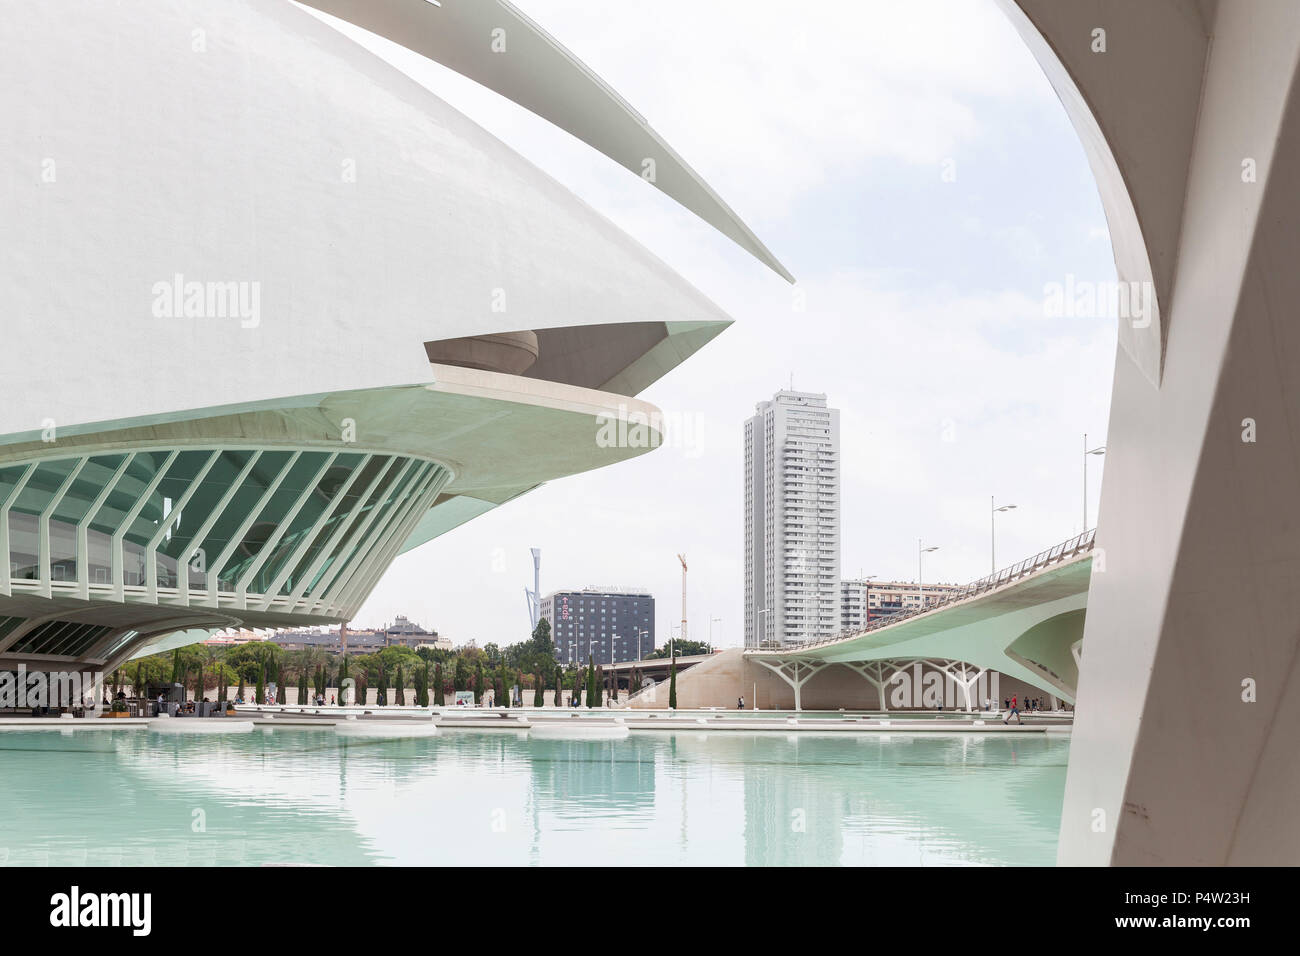 Valencia, Spain, Ciutat de les Arts i les Ciencies in Valencia, built by architect Santiago Calatrava Stock Photo